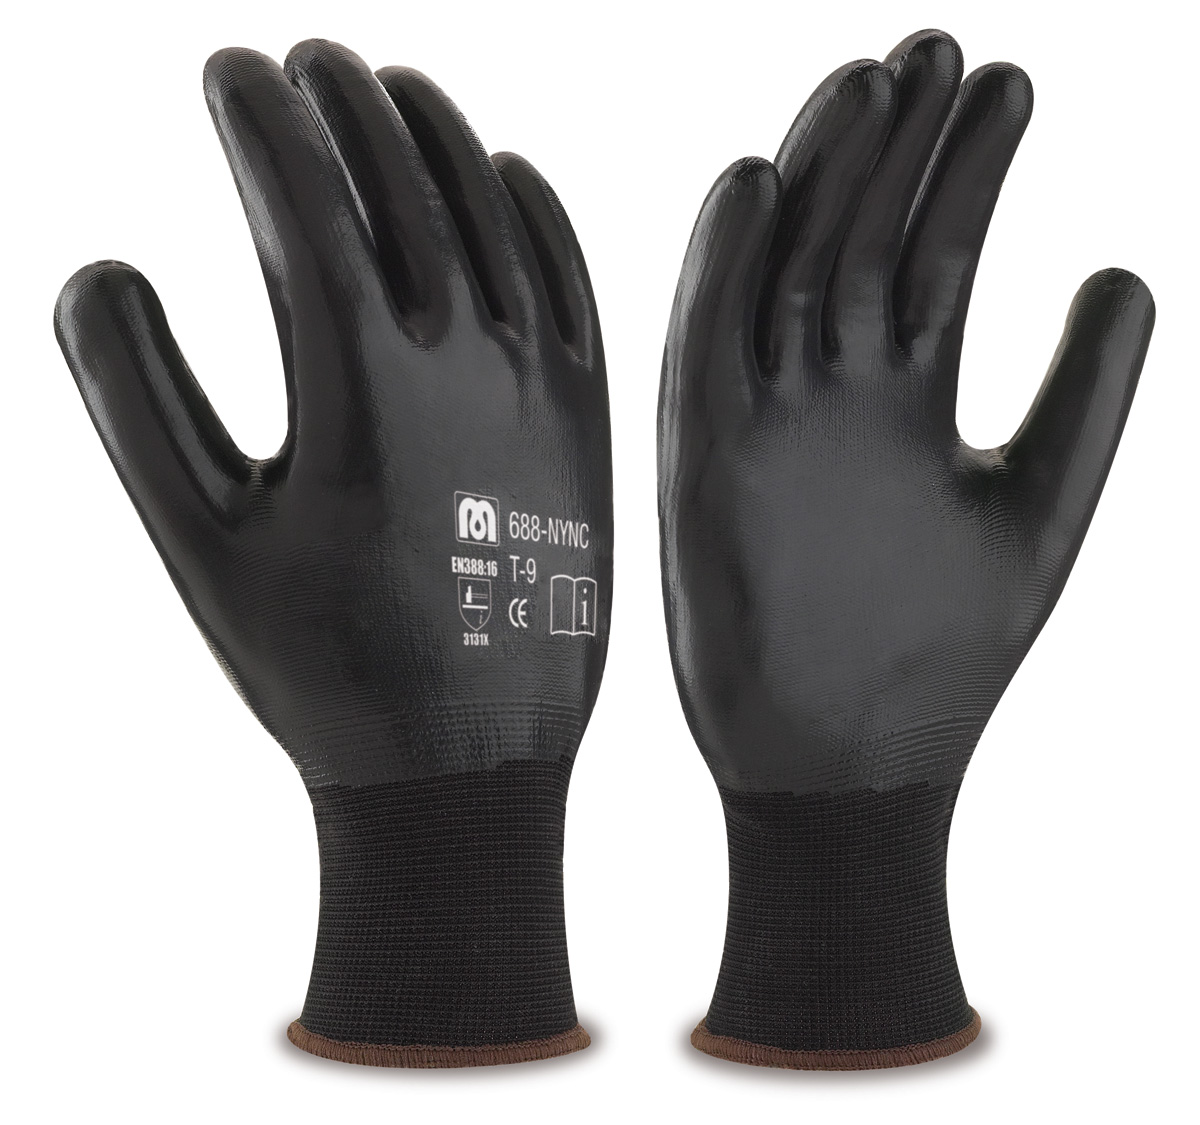 688-NYNC Luvas de Trabalho Nylon Luva de poliéster cor preta com cobertura de nitrilo de cor preta na palma, dedos e dorso.